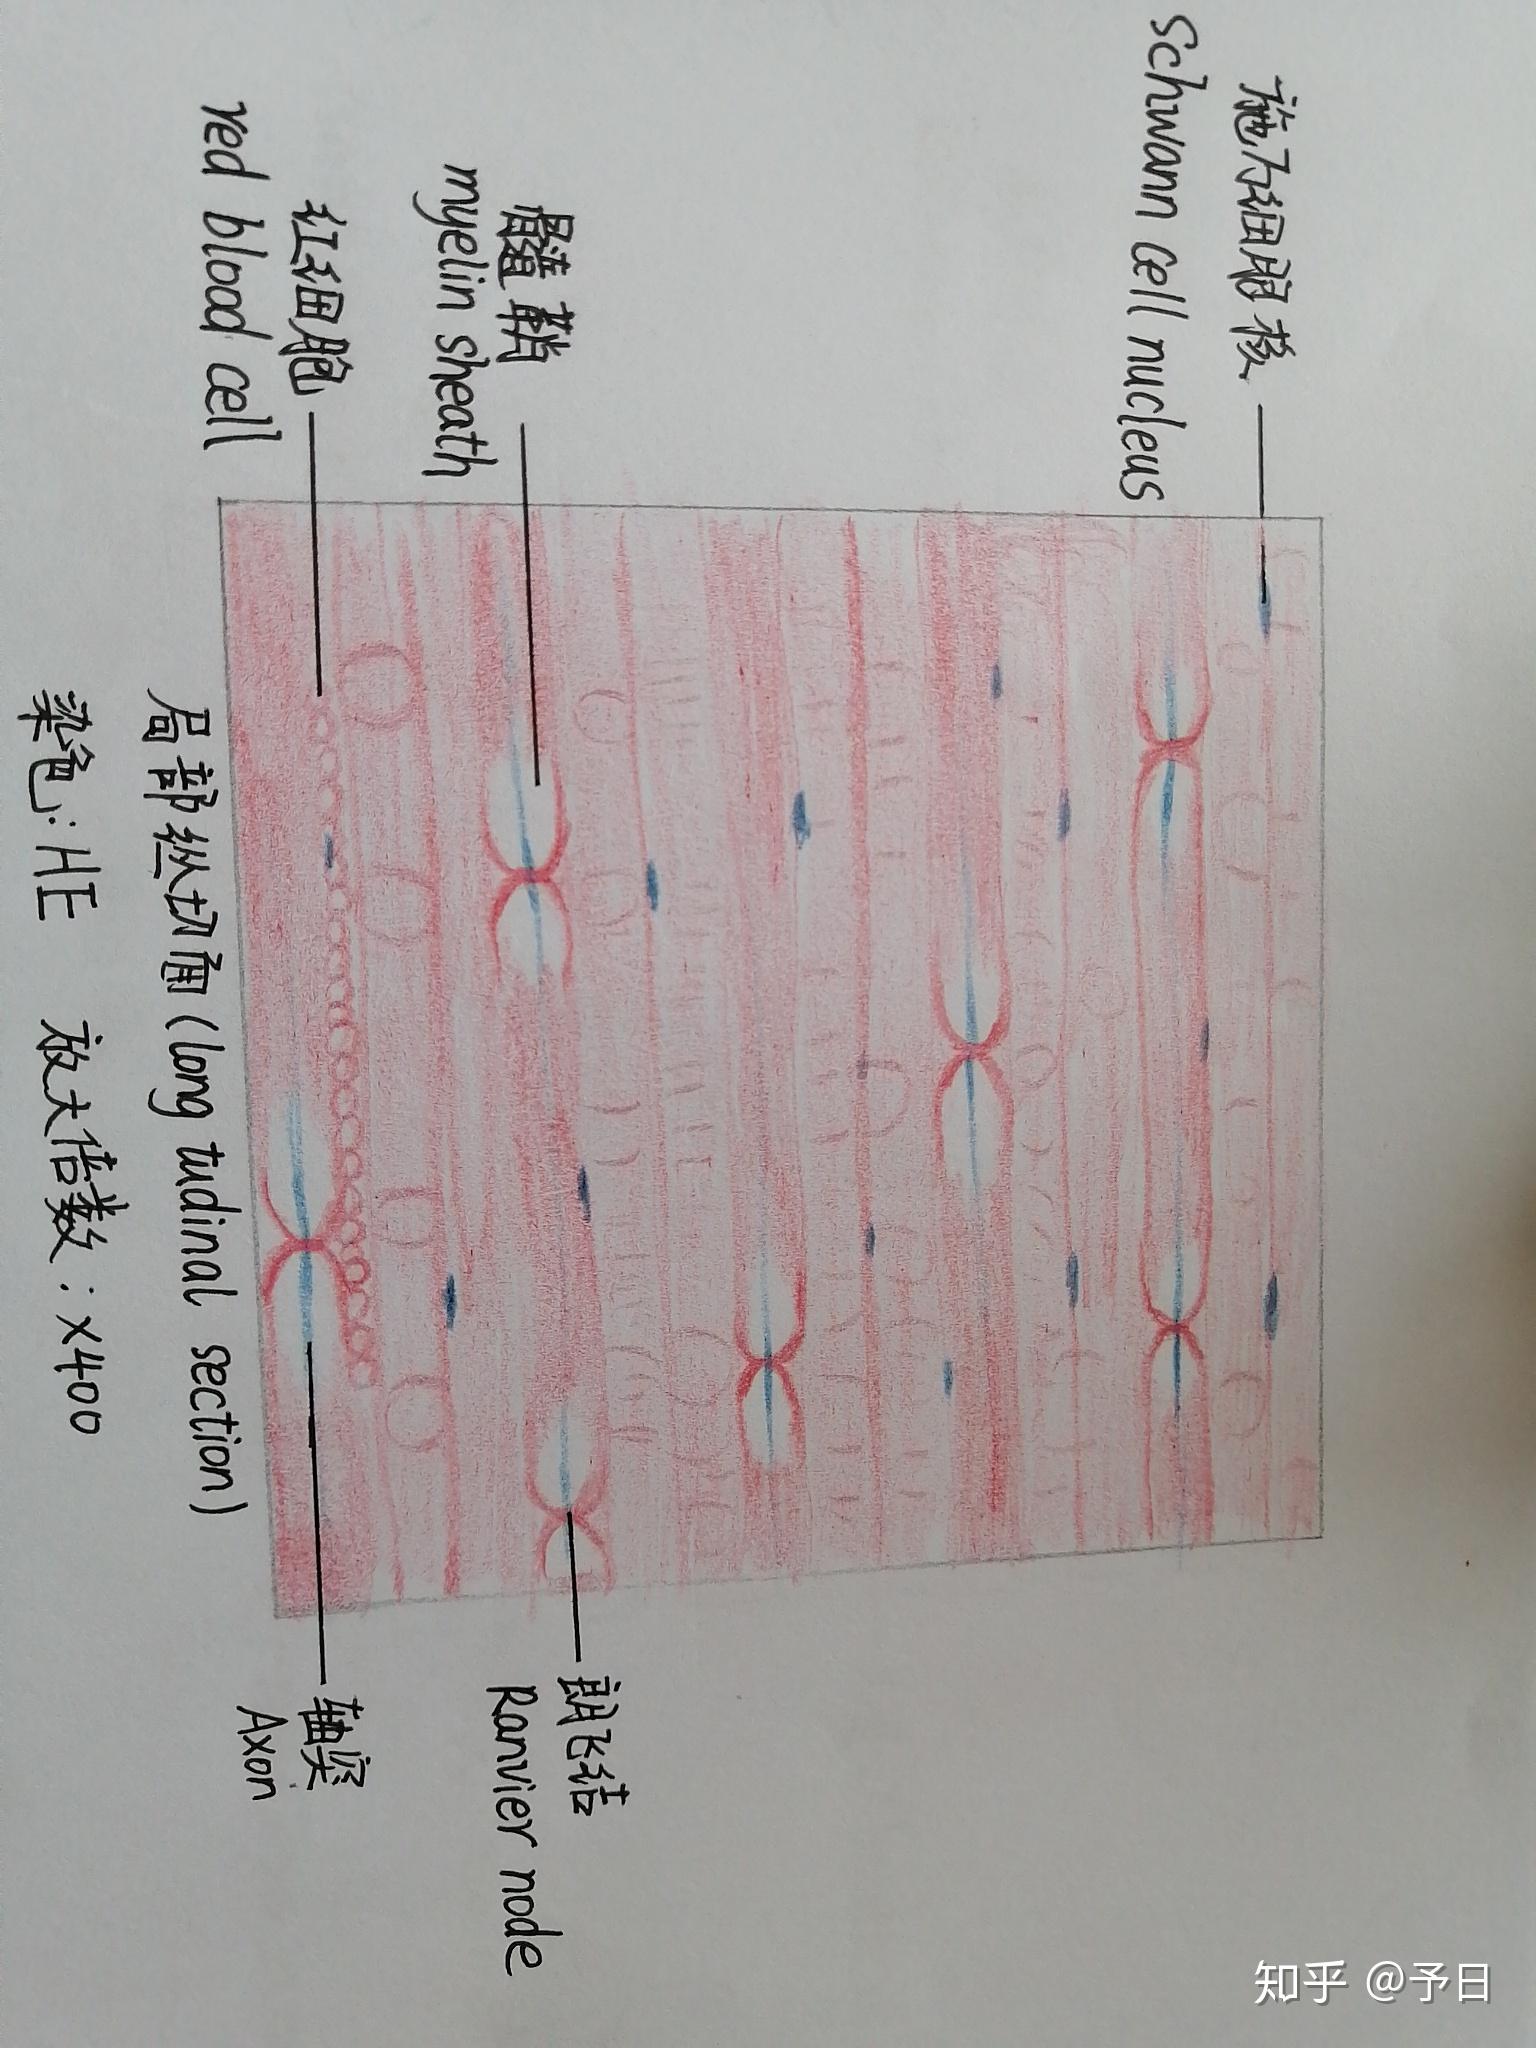 神经元的红蓝铅笔图图片